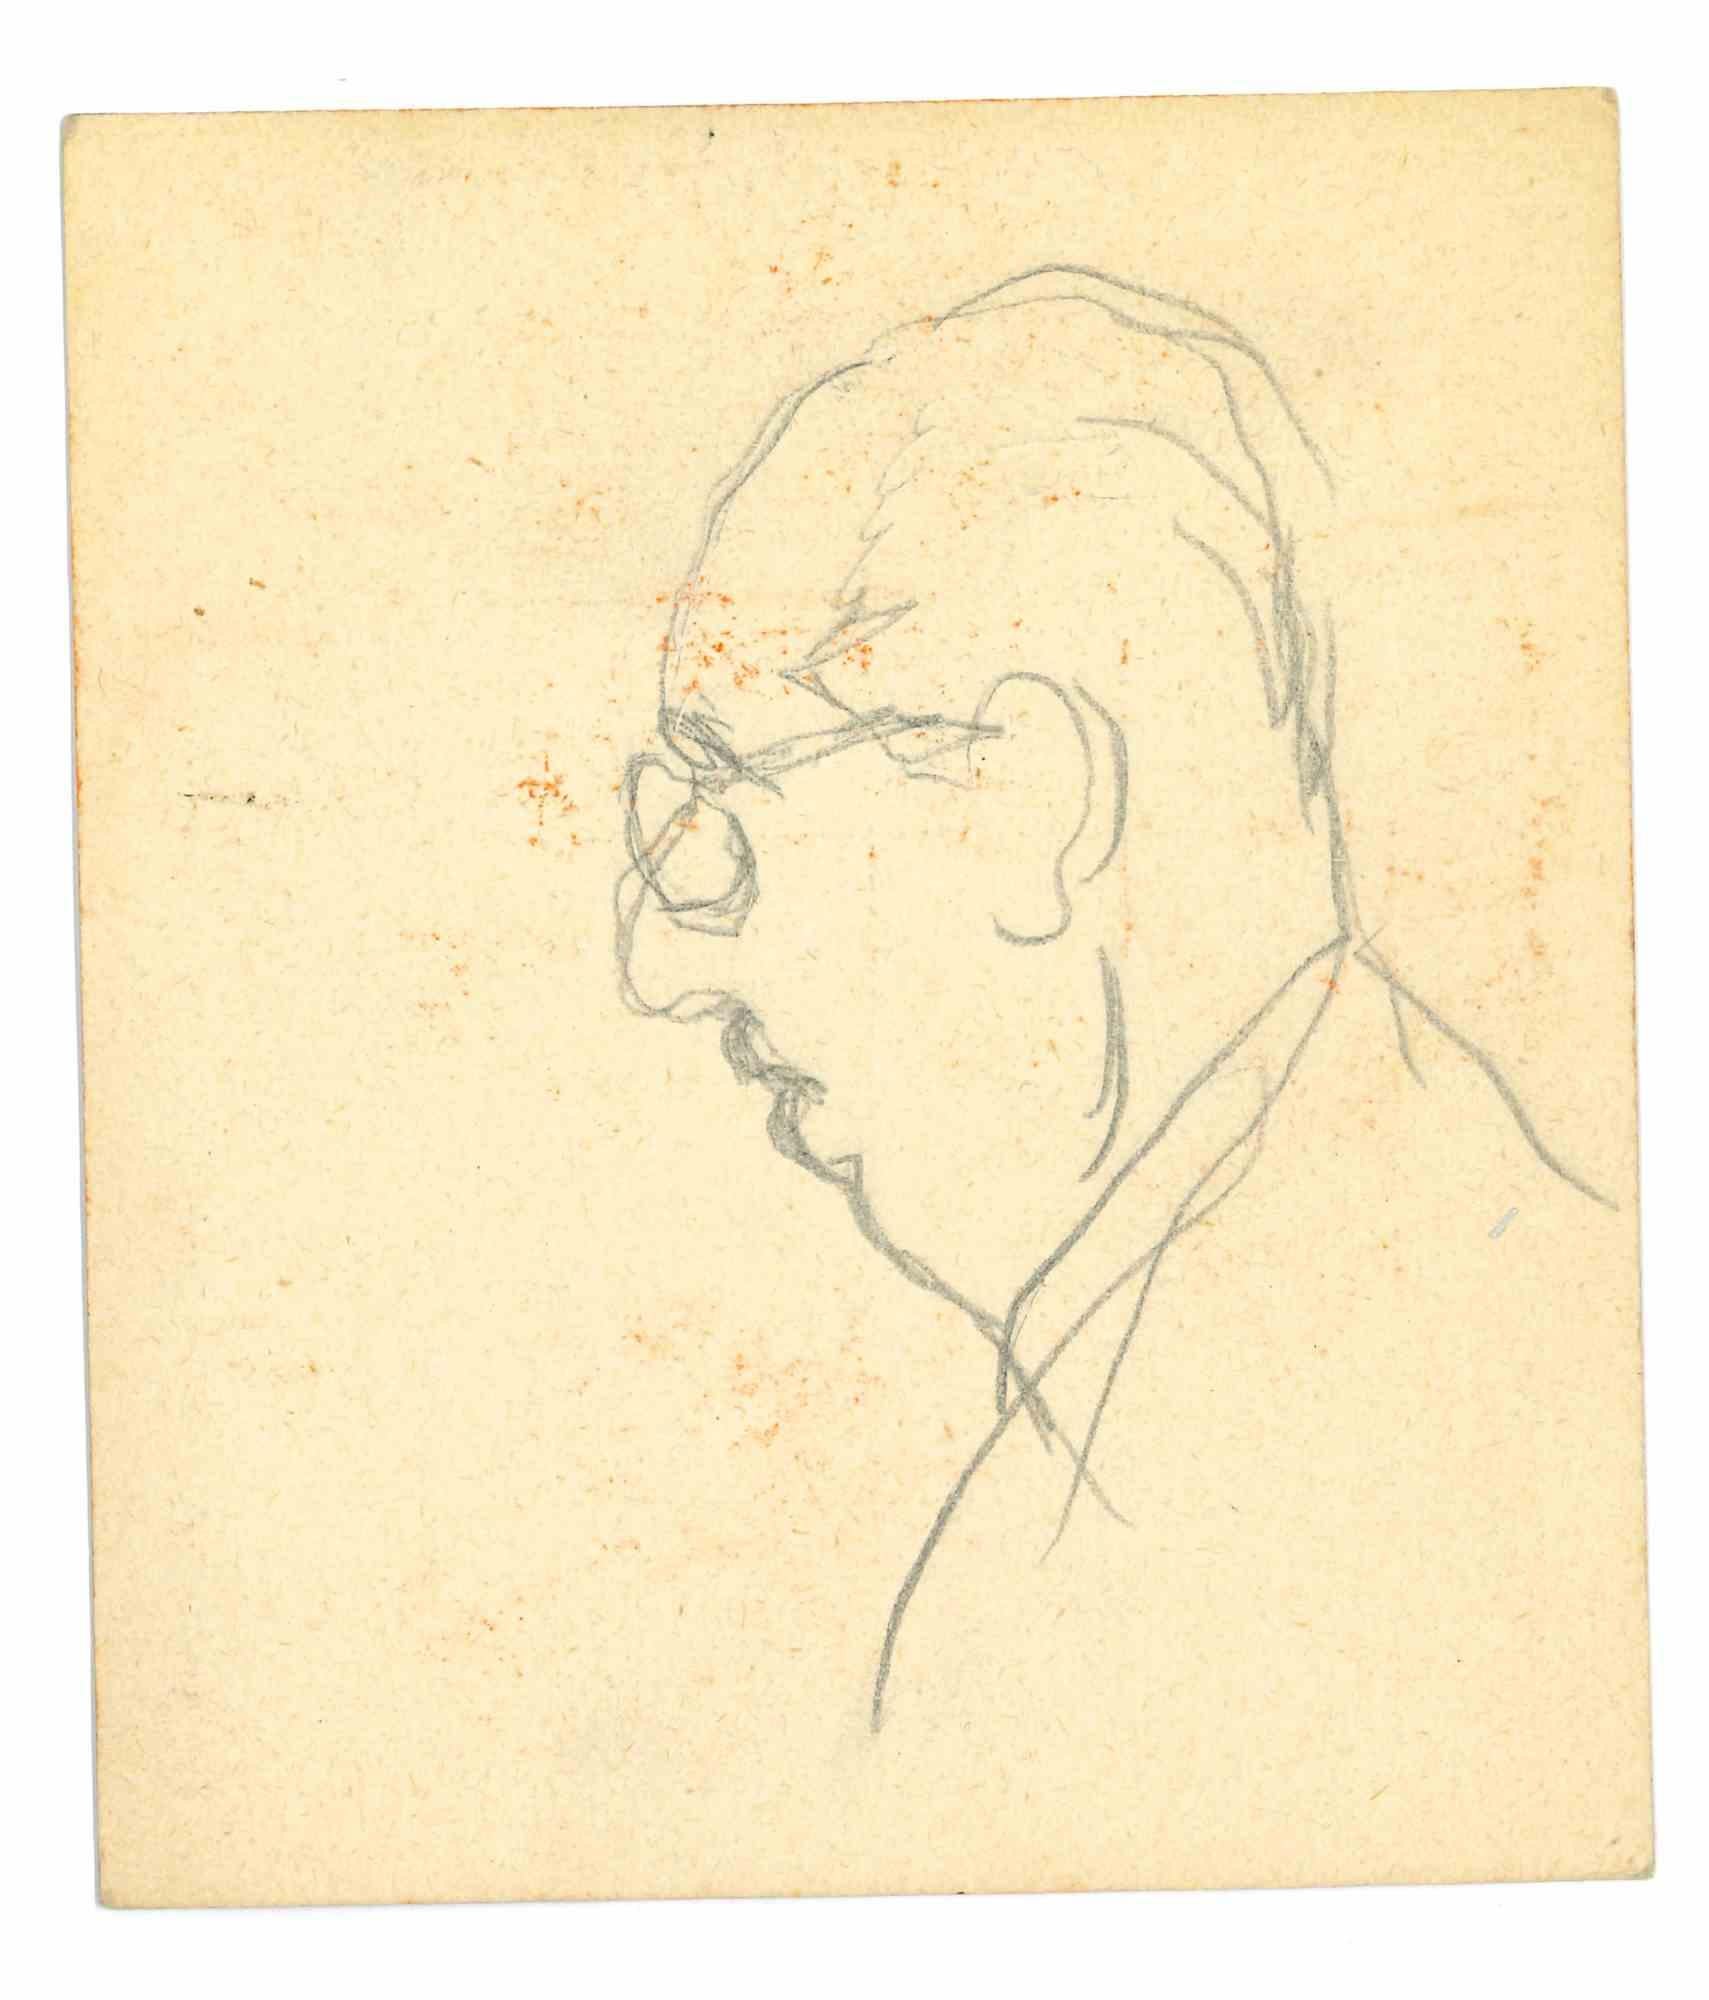 Das Profil ist eine Original-Zeichnung  in Bleistift auf Papier, realisiert von Mino Maccari Mitte des 20. Jahrhunderts.

Guter Zustand mit einigen Stockflecken.

Mino Maccari (1898-1989) war ein italienischer Schriftsteller, Maler, Graveur und